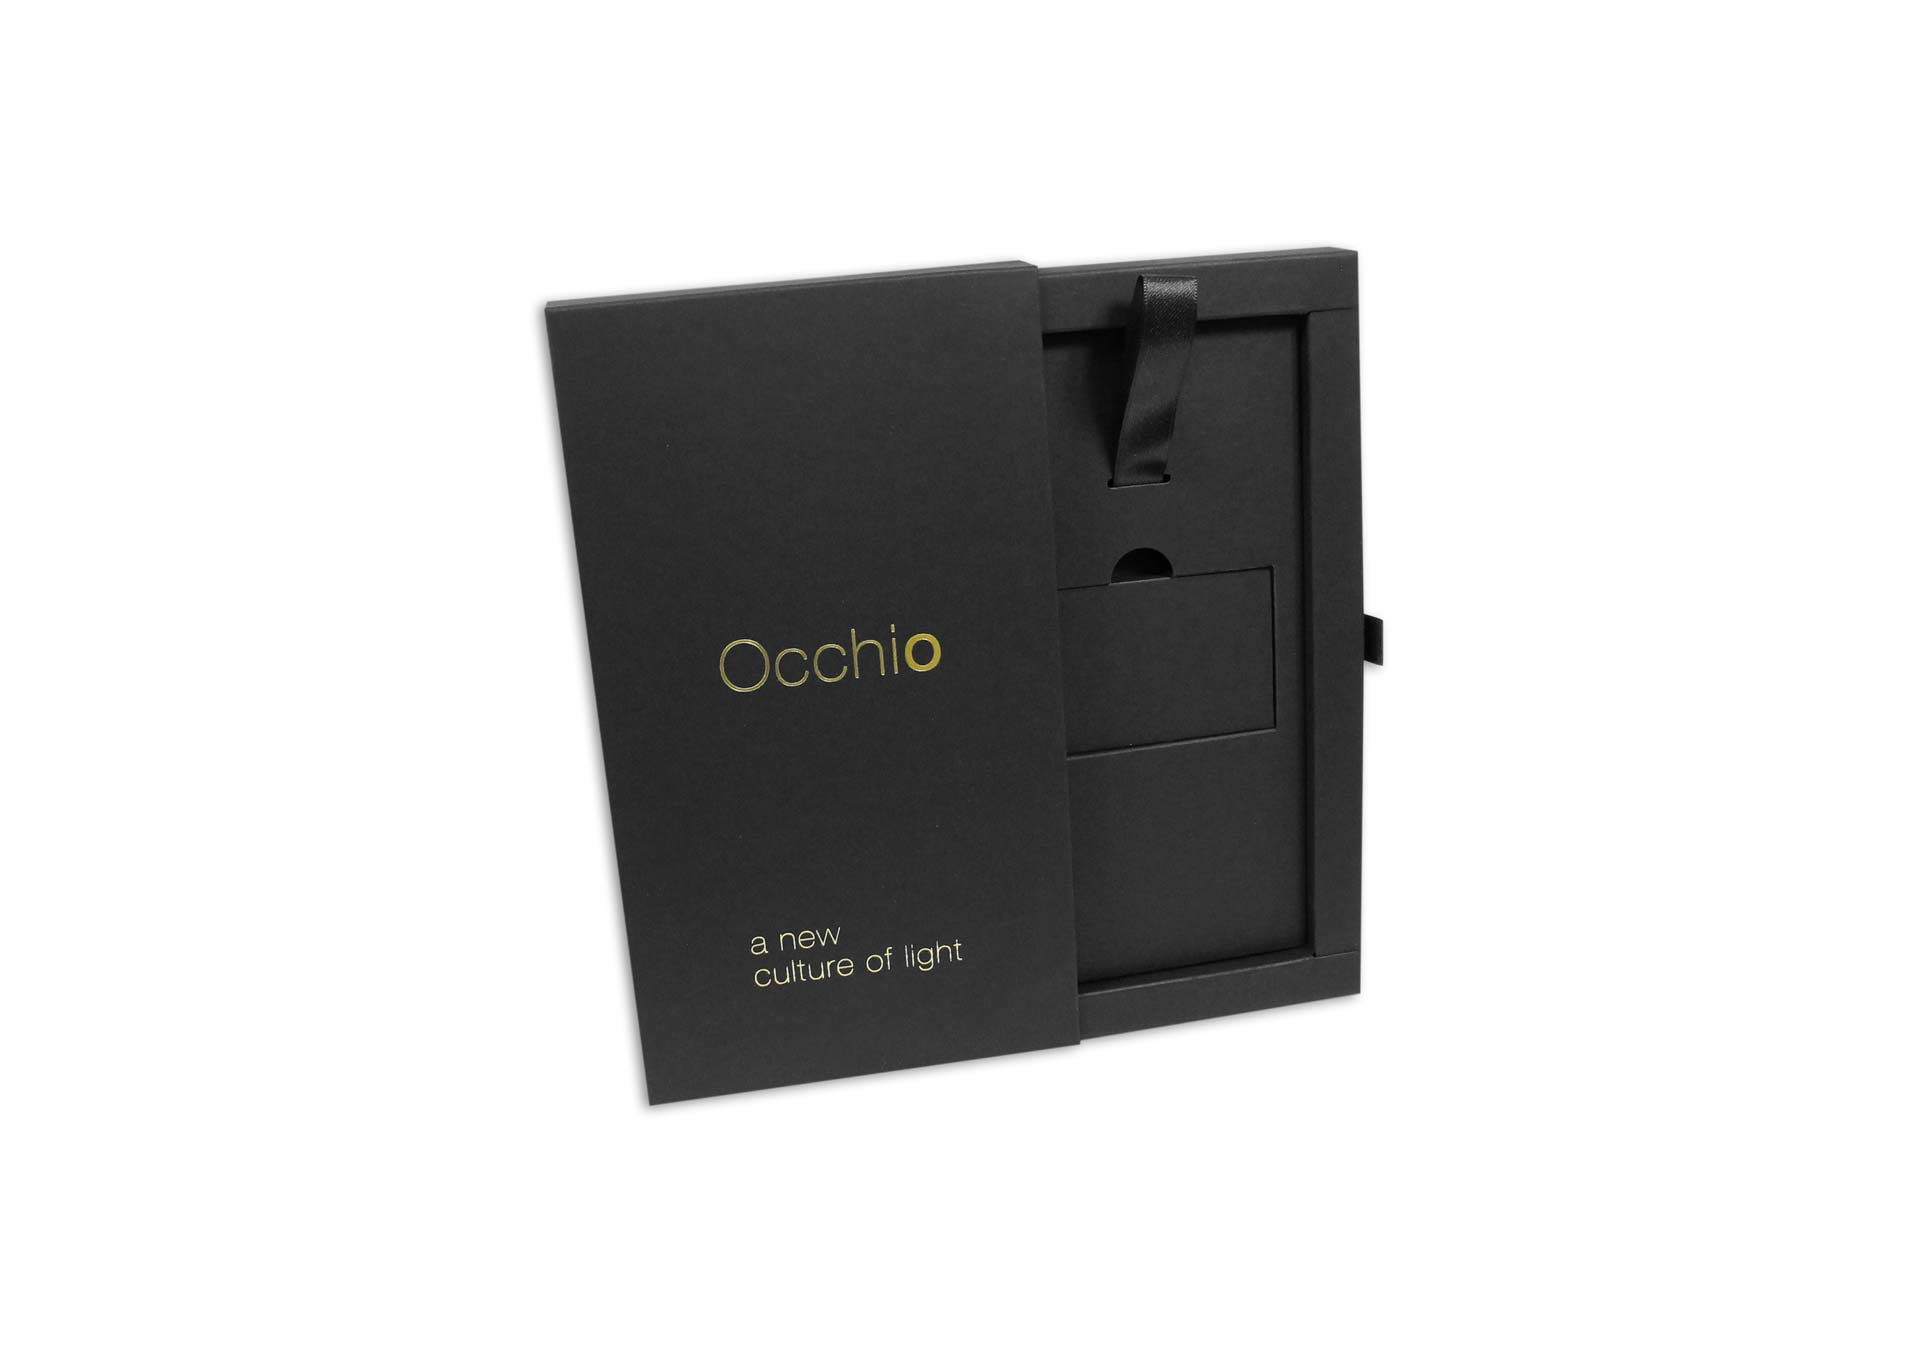 Schwarze Schiebeschachtel mit einem goldenen Logodruck von Occhio. Unten auf der Schachtel ist noch ein kleinerer weißer Druck und die Schachtel ist halb geöffnet. Im Inneren befindet sich ein Inlay, das mit einer schwarzen Schlaufe versehen ist. 